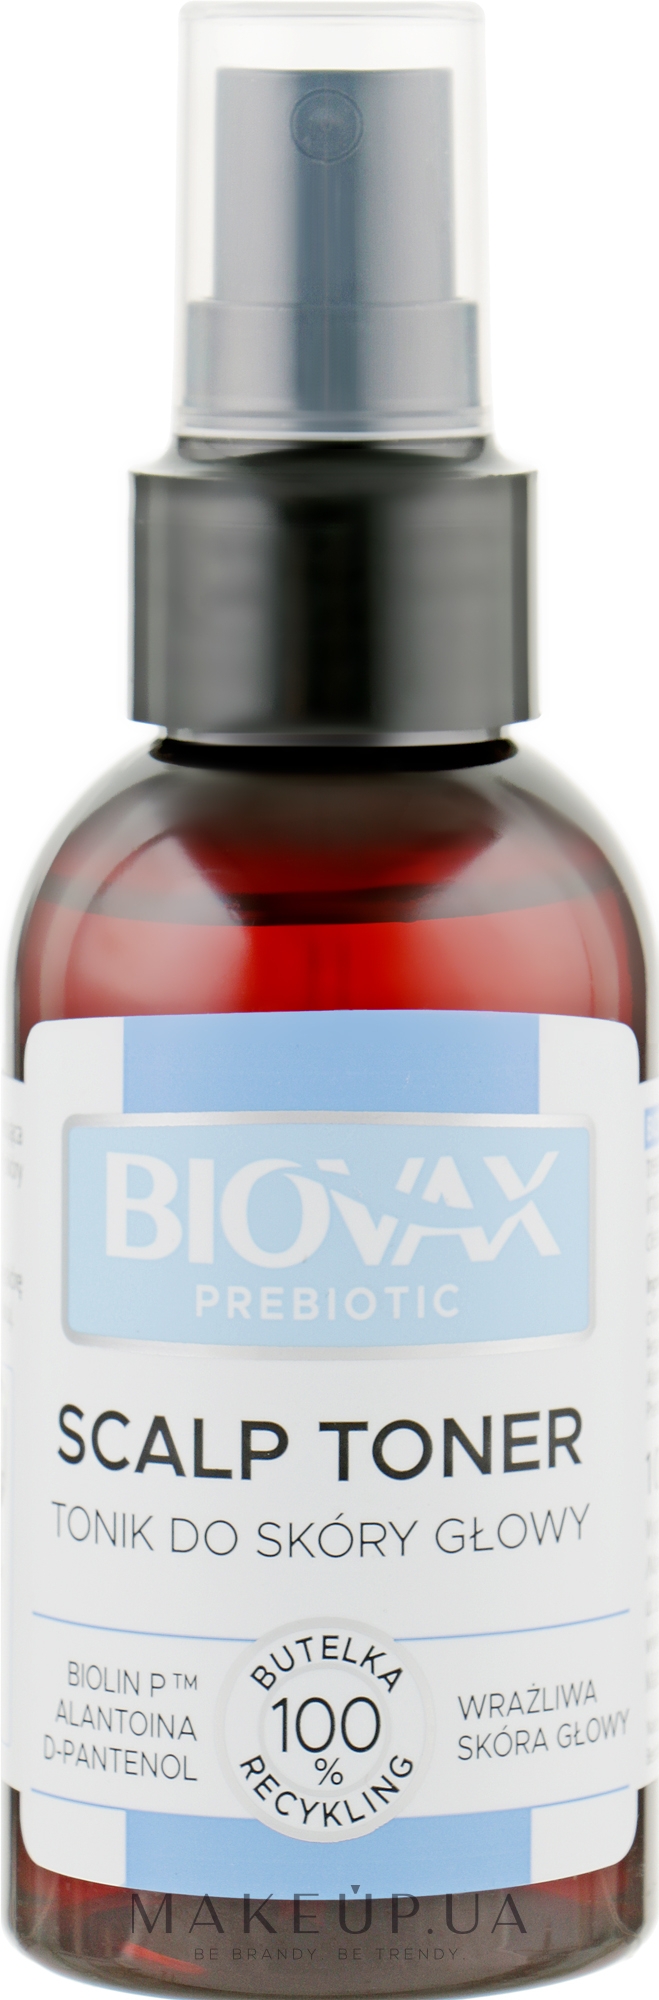 Тонік для шкіри голови - L'biotica Biovax Prebiotic Scalp Toner — фото 100ml